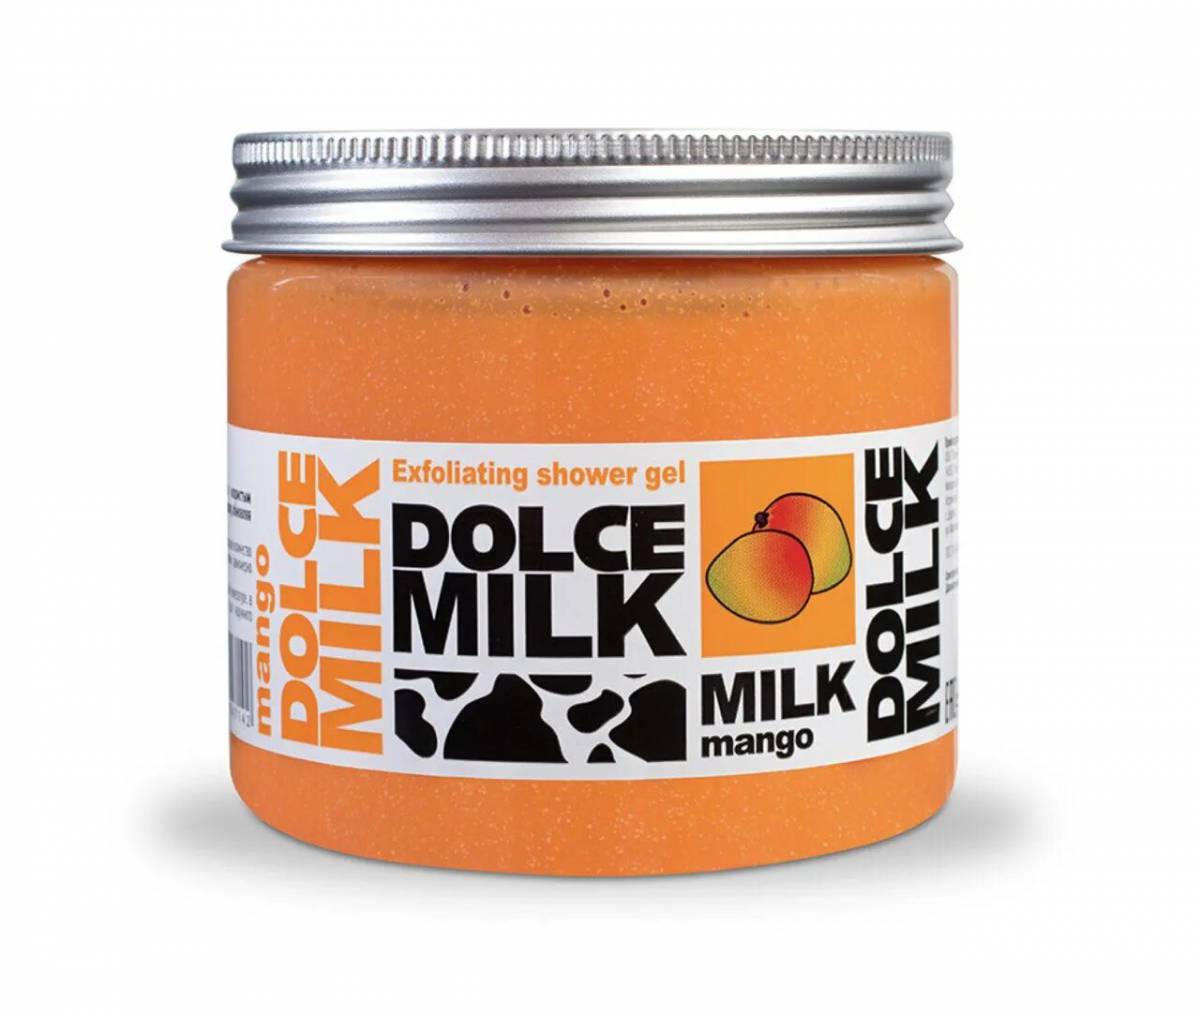 Dolce milk #5